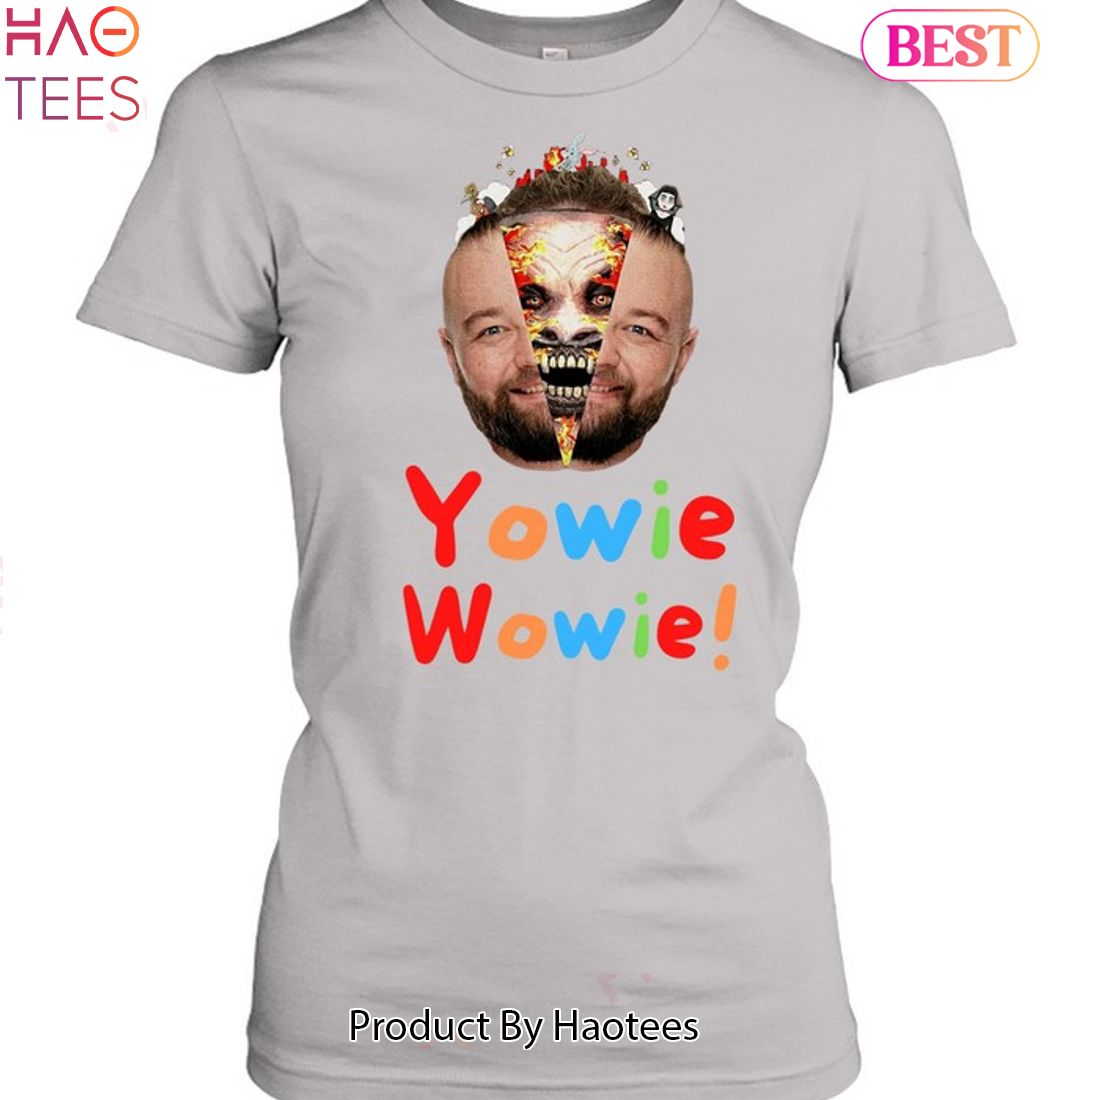 YOWIE WOWIE' Women's T-Shirt